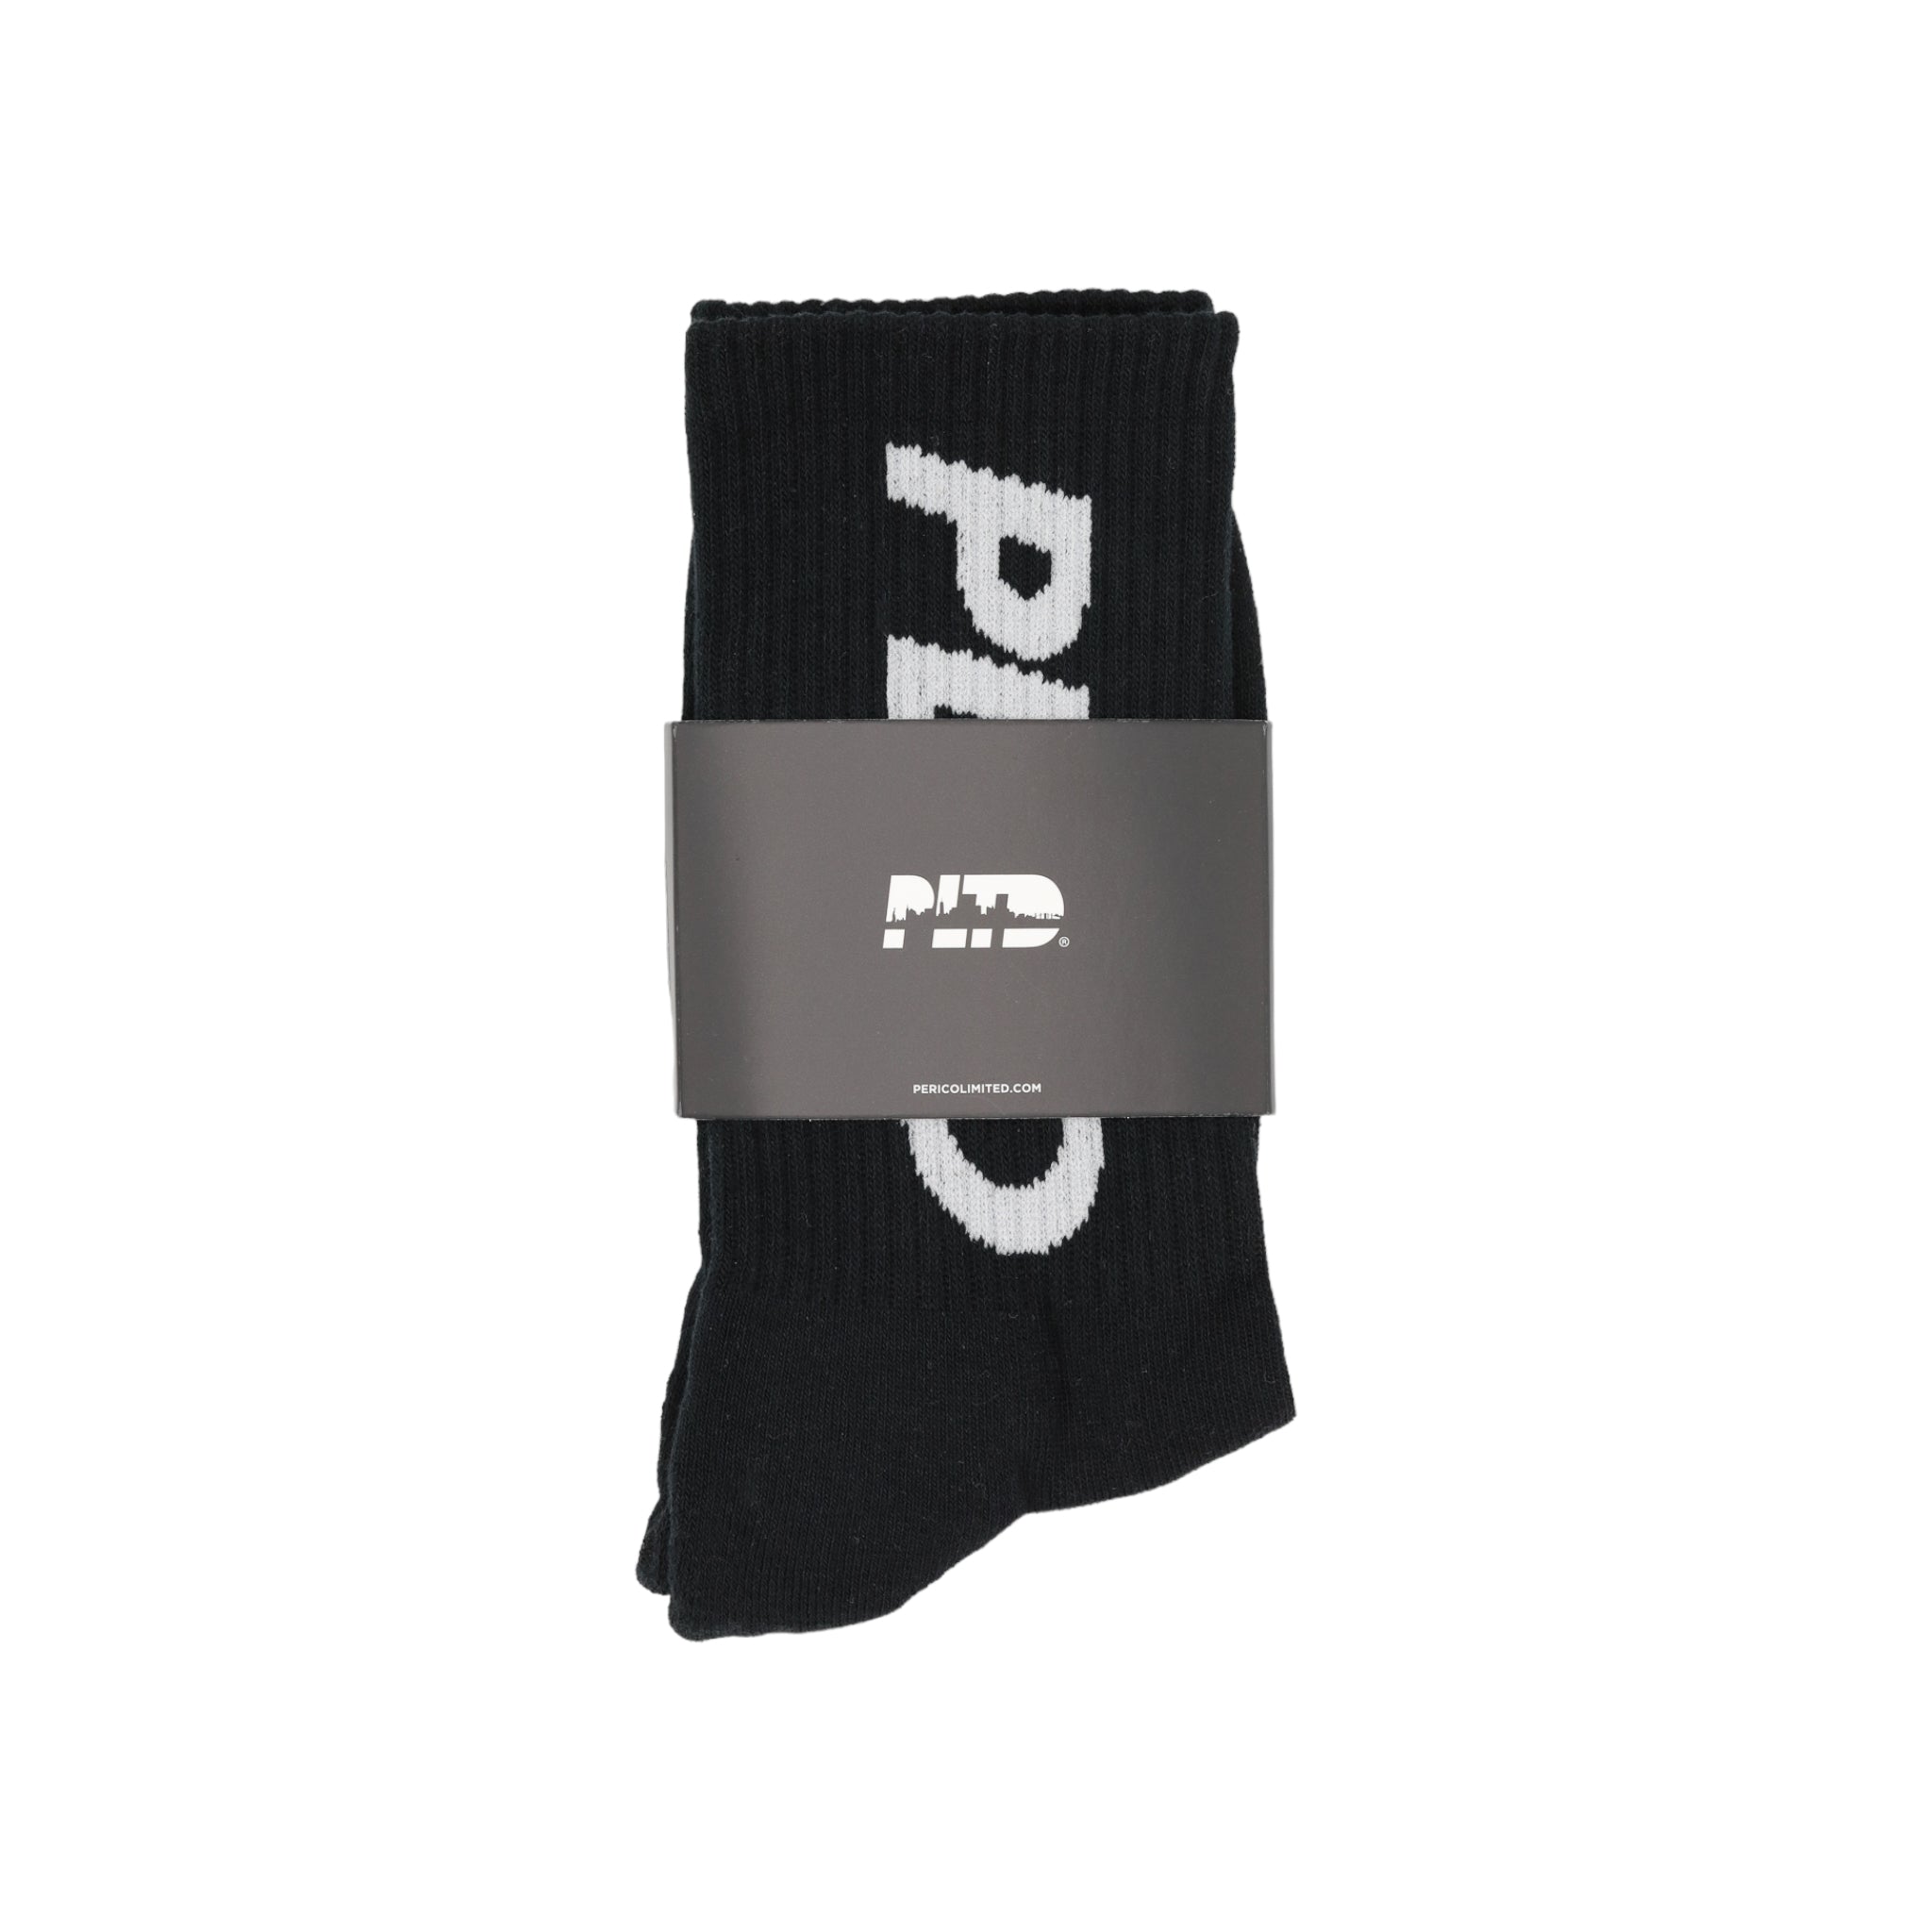 Team PLTD - Black Terry Cloth Socks